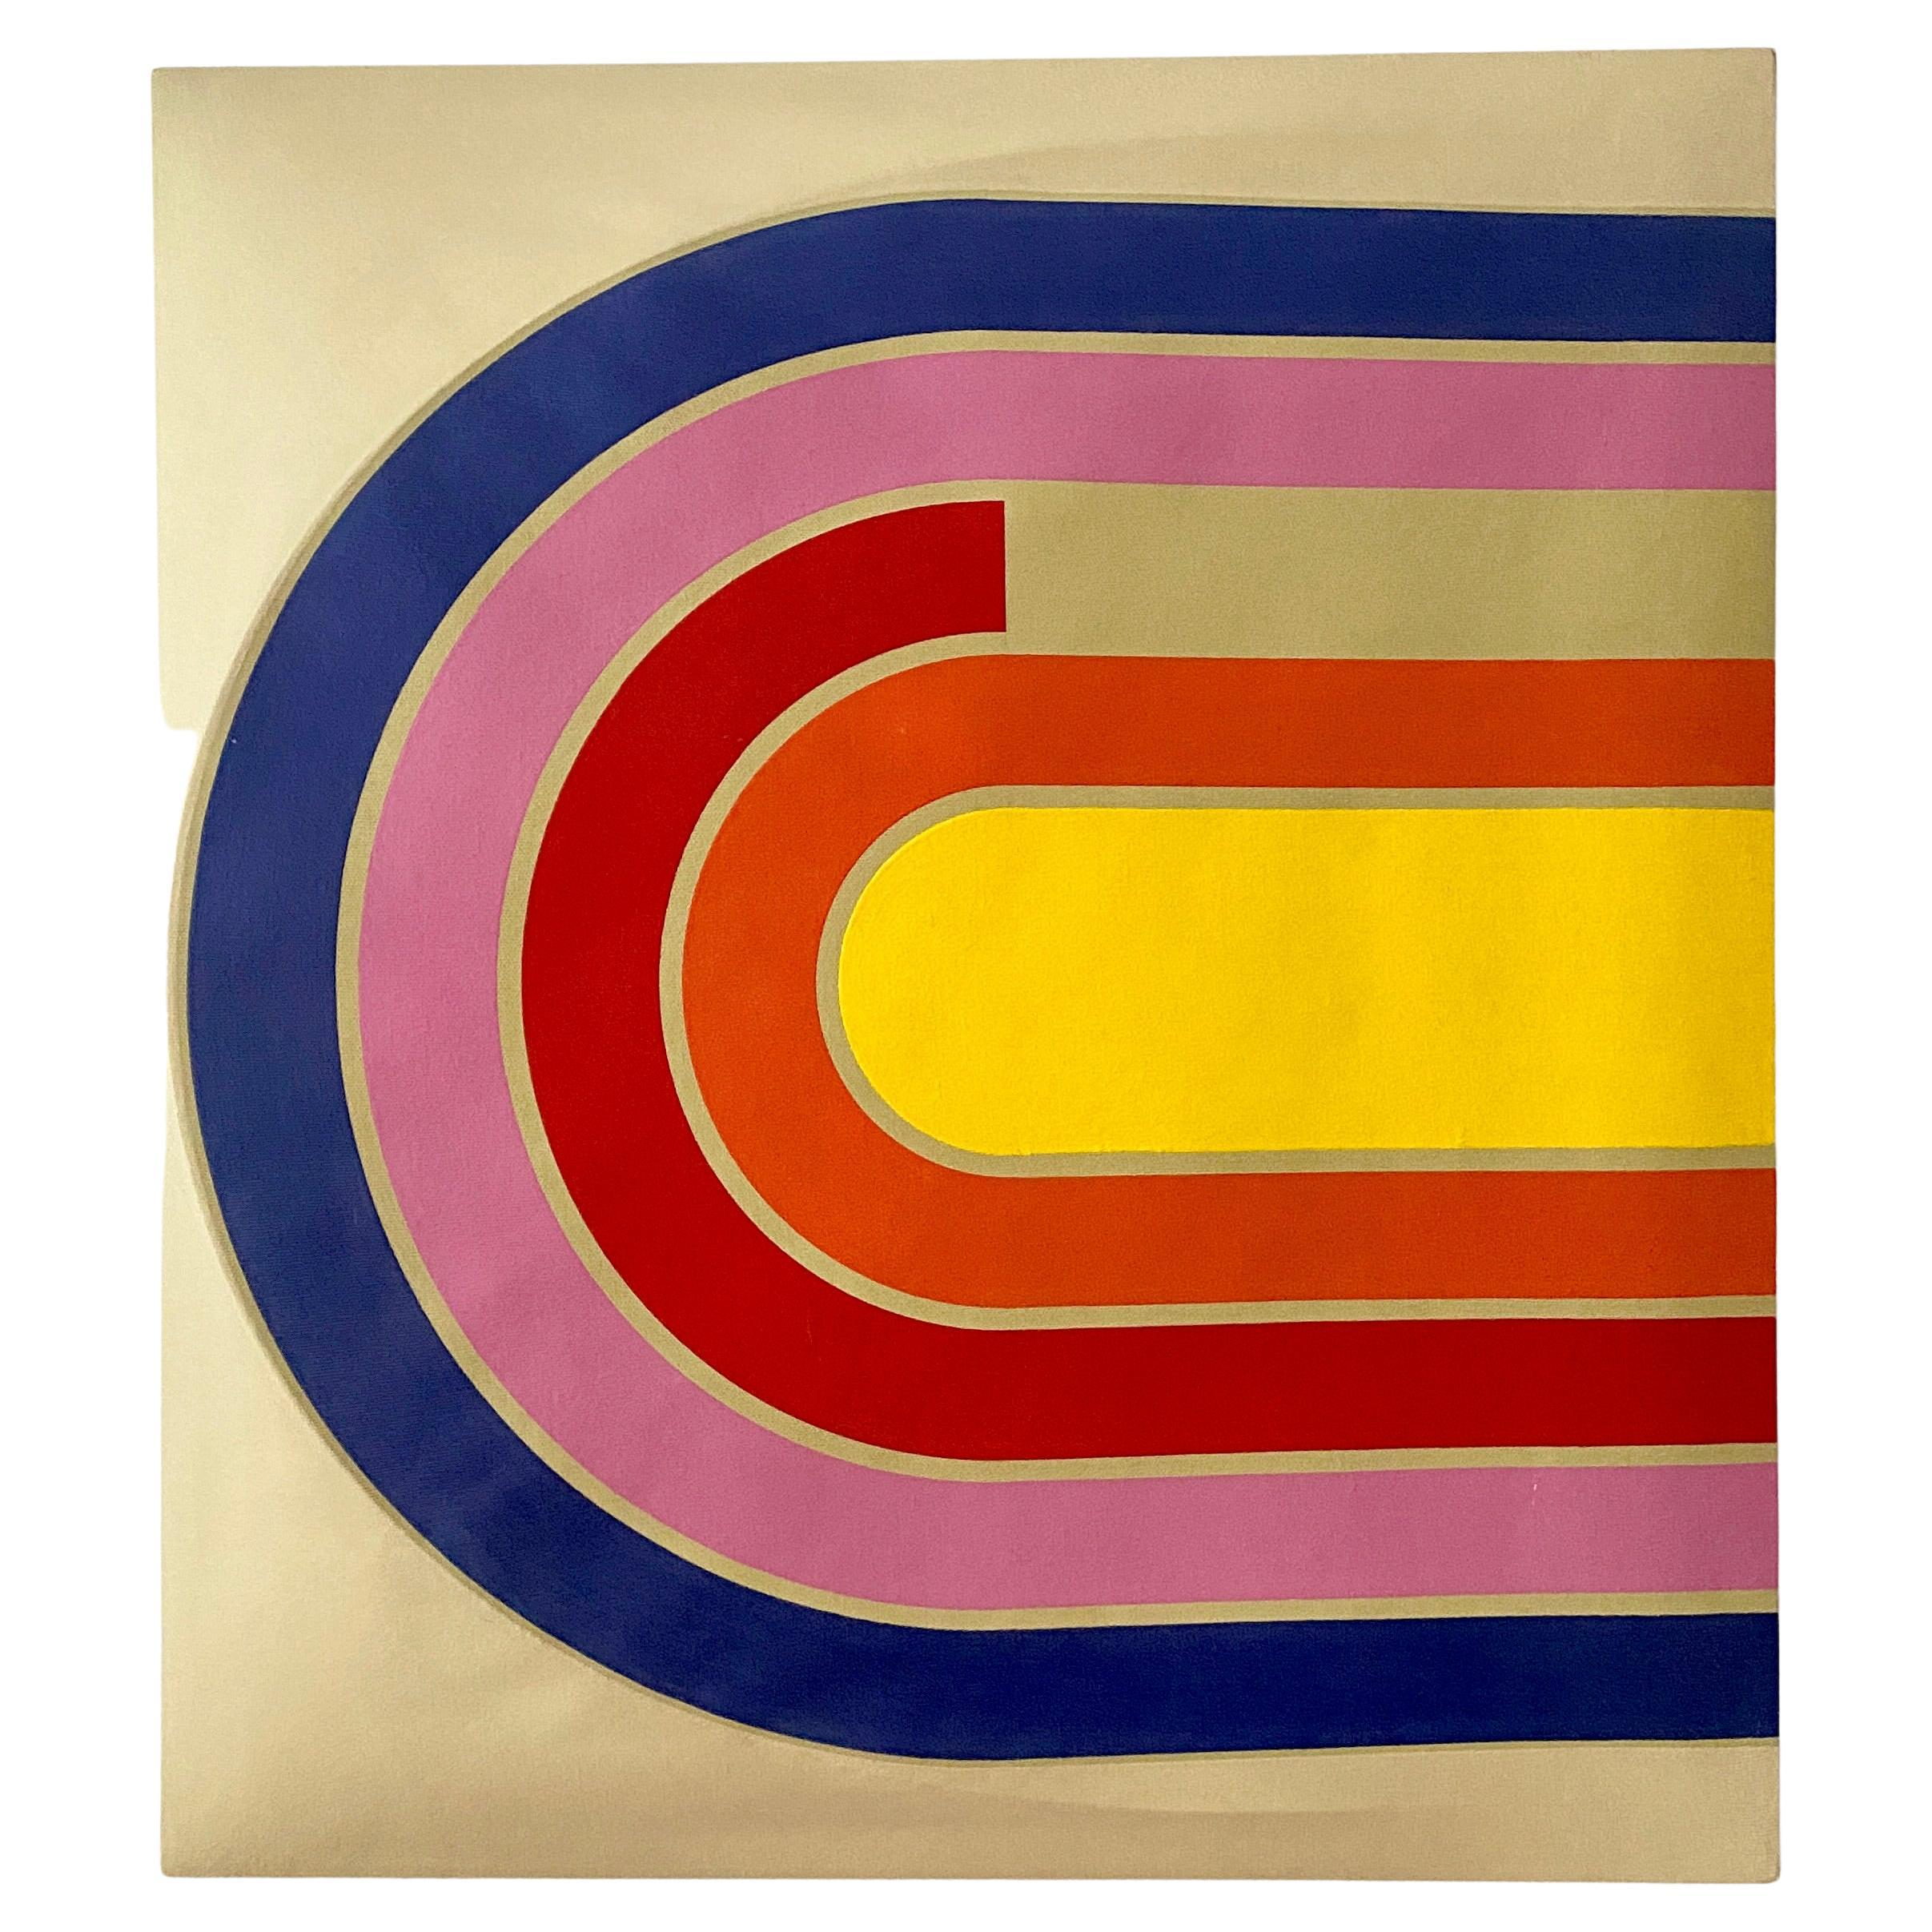 Peinture pop acrylique minimaliste vintage de style Frank Stella, signée Manuella 70